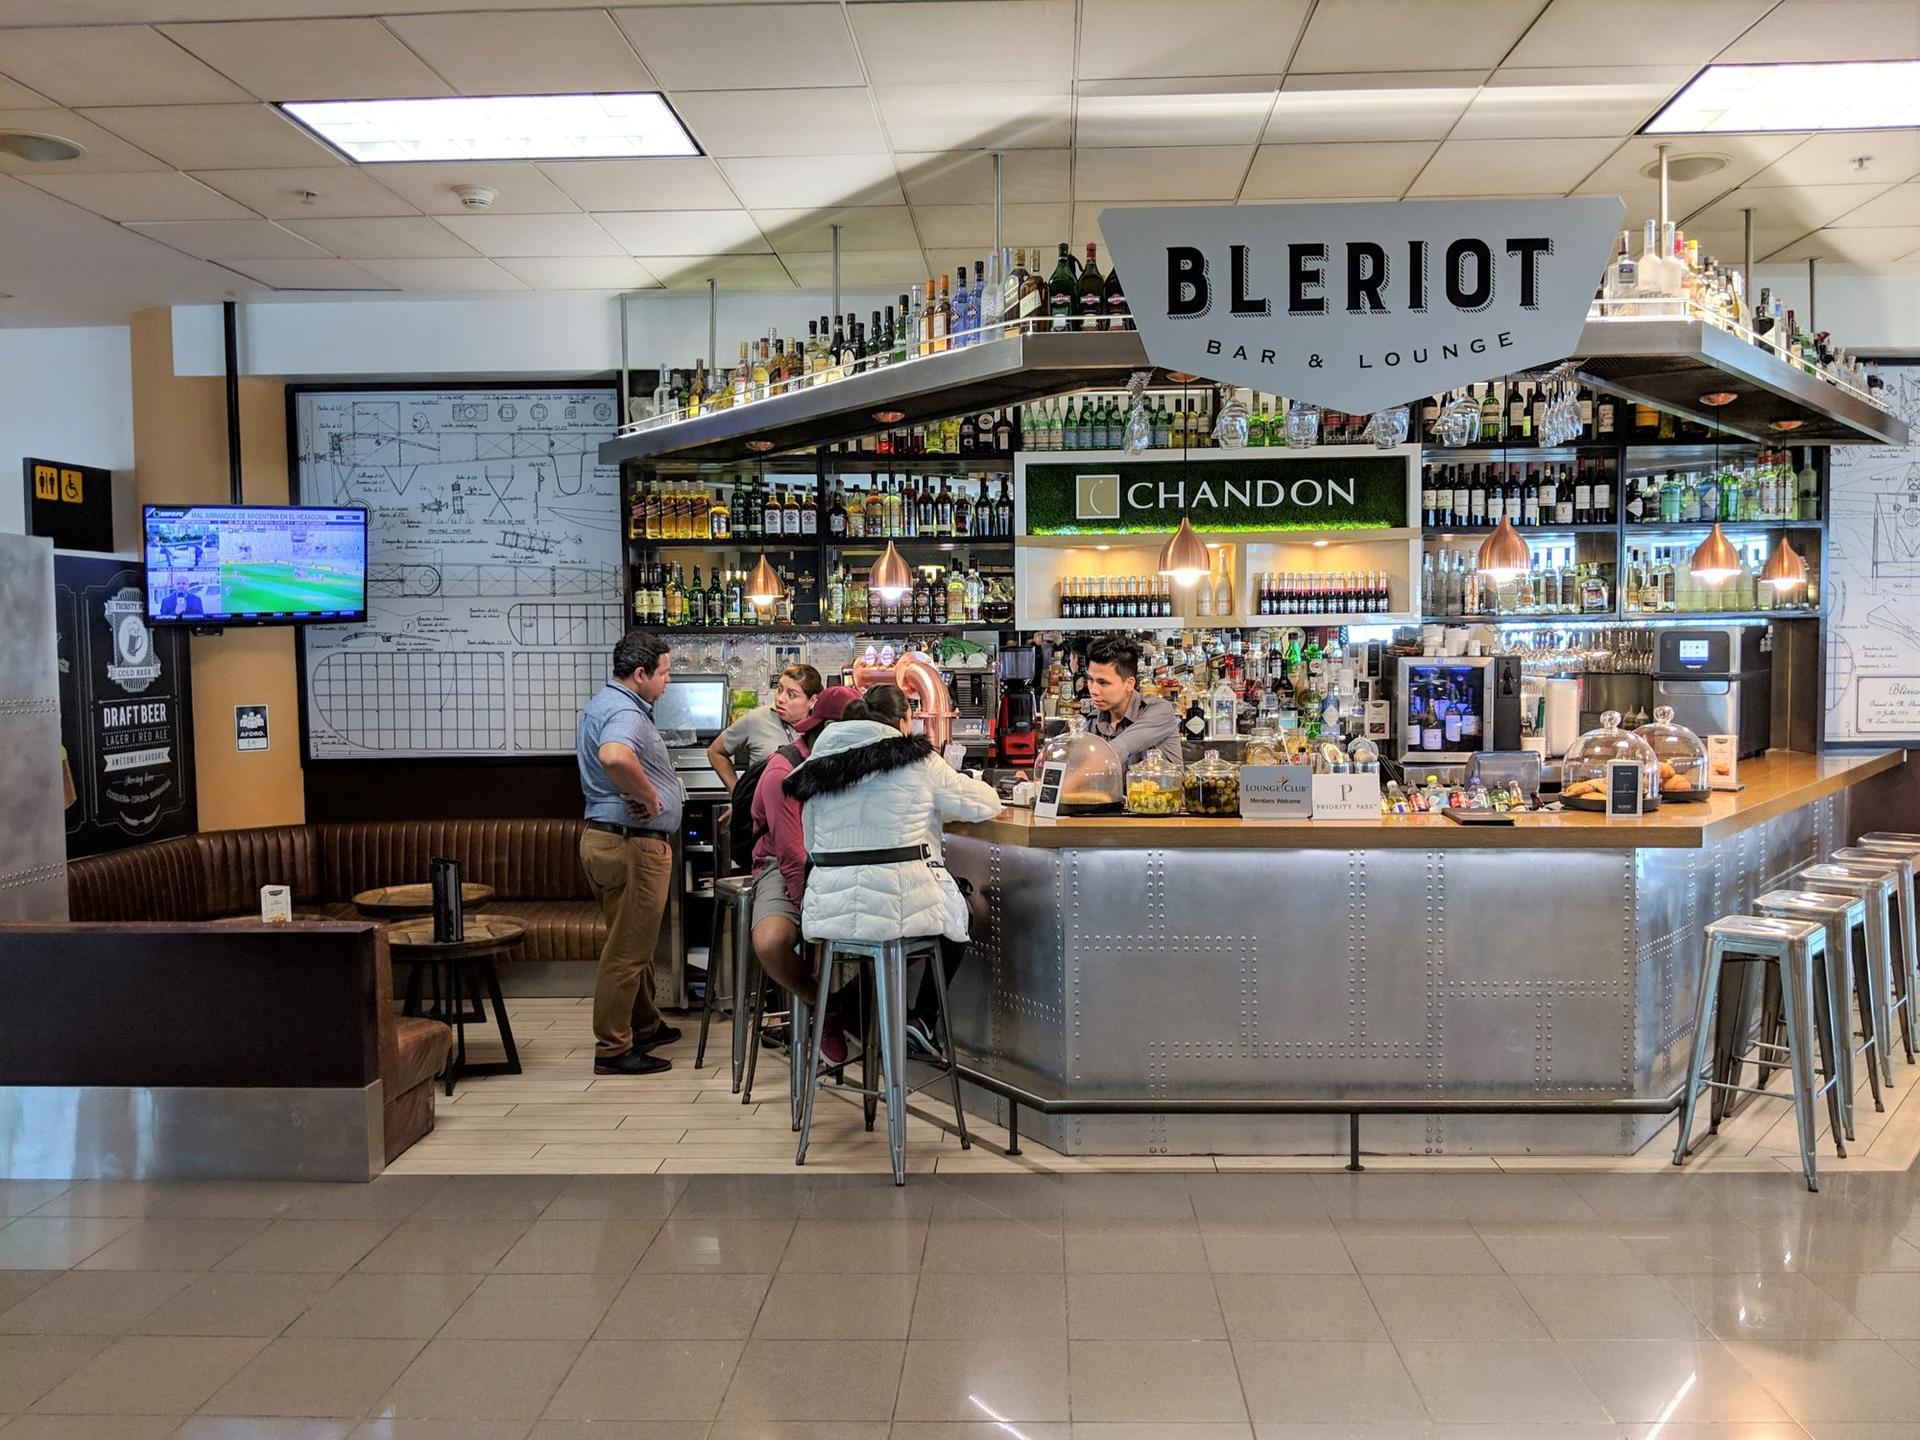 Bleriot Bar & Lounge image 1 of 10